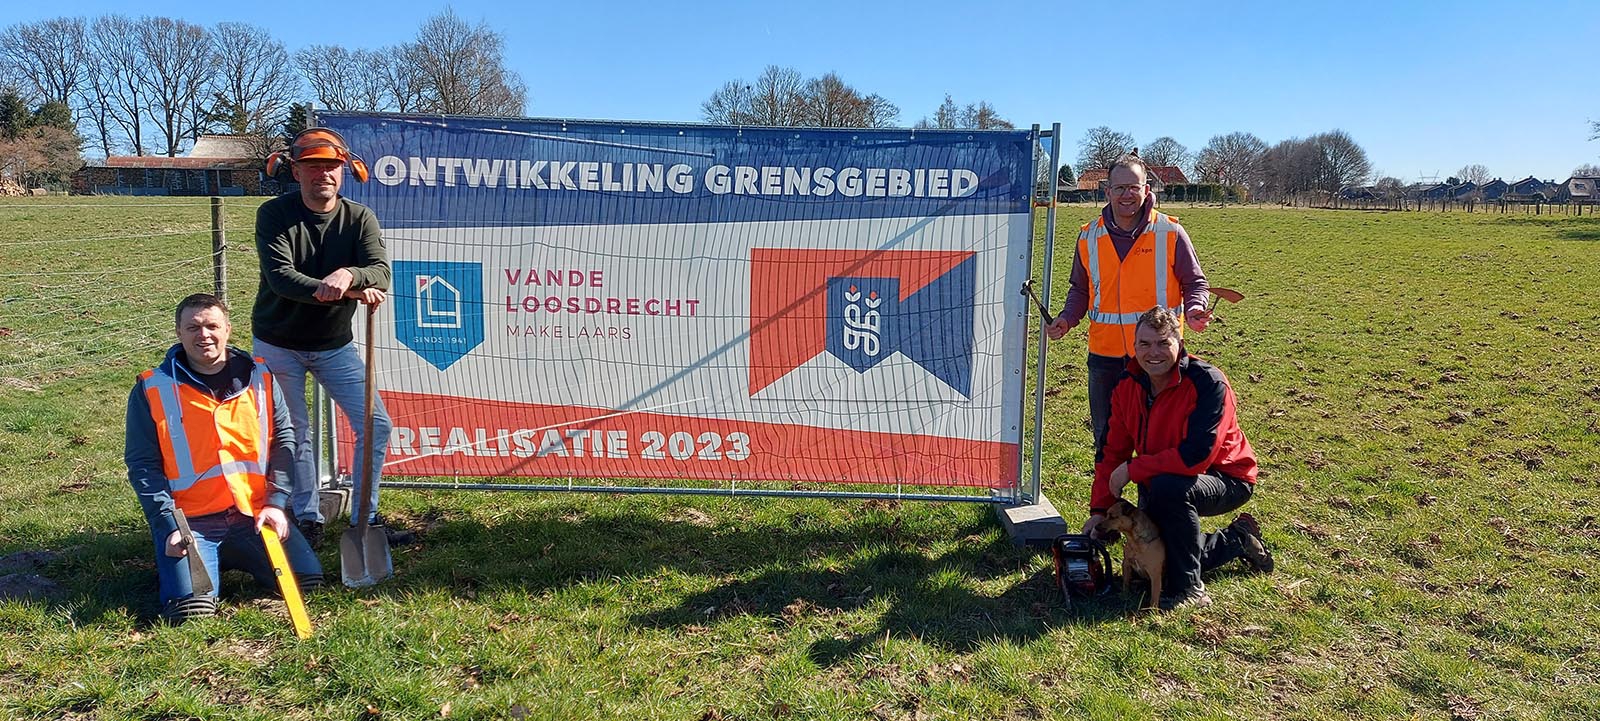 Un «projet unique de soins, de travail et de vie» est en cours de construction dans la zone frontalière de Hierden